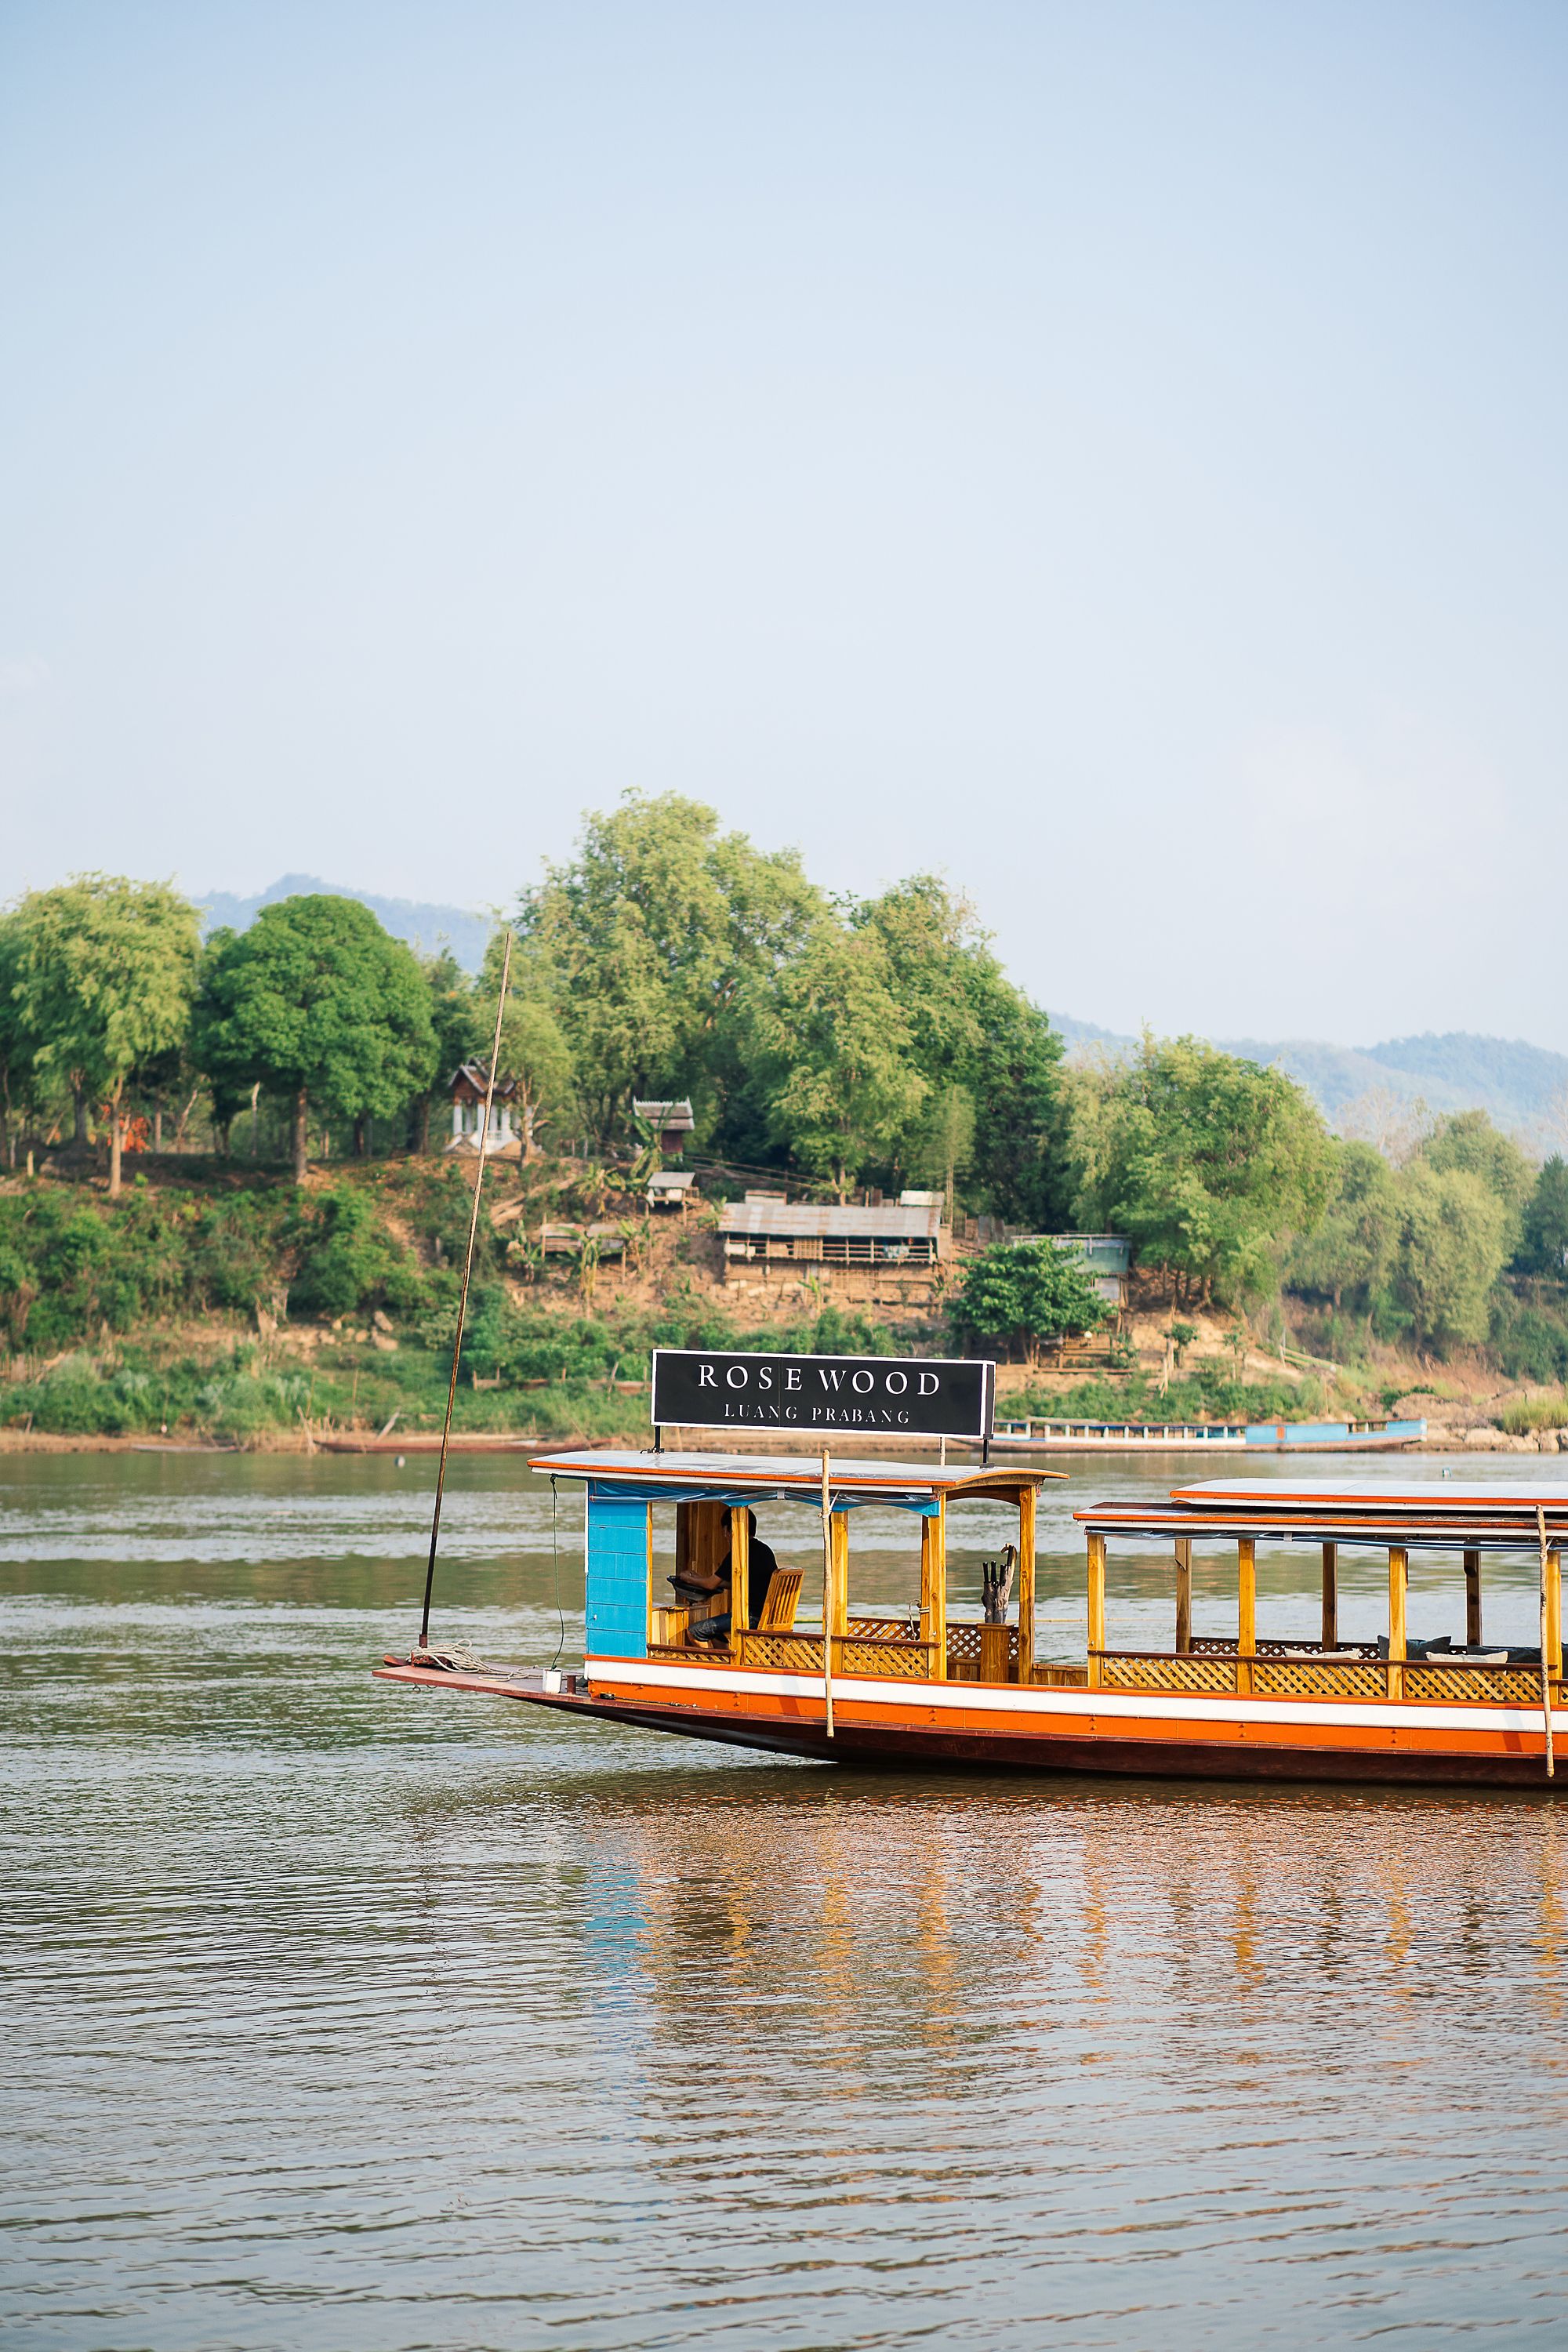 mekong river cruise from luang prabang to vientiane